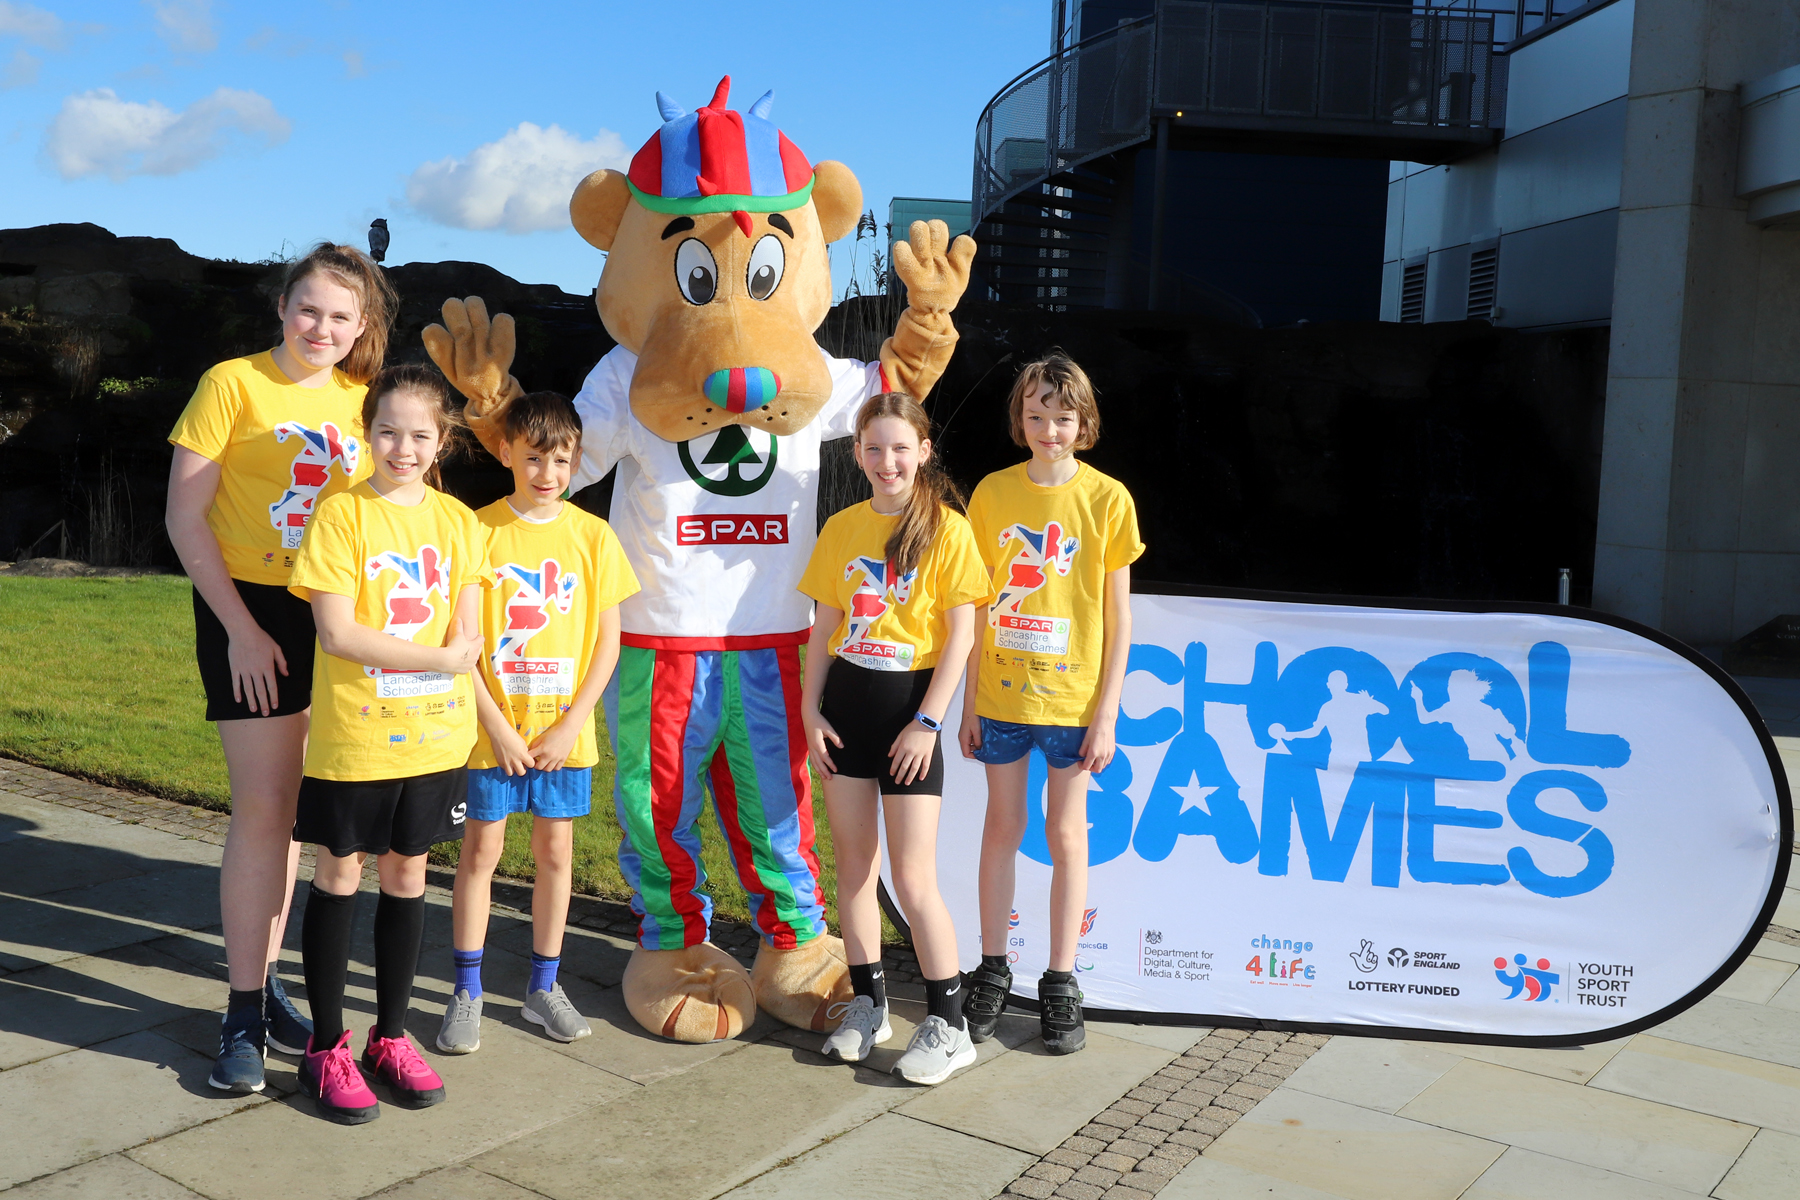 Let the games begin! SPAR and Active Lancashire launch the Lancashire School Games!